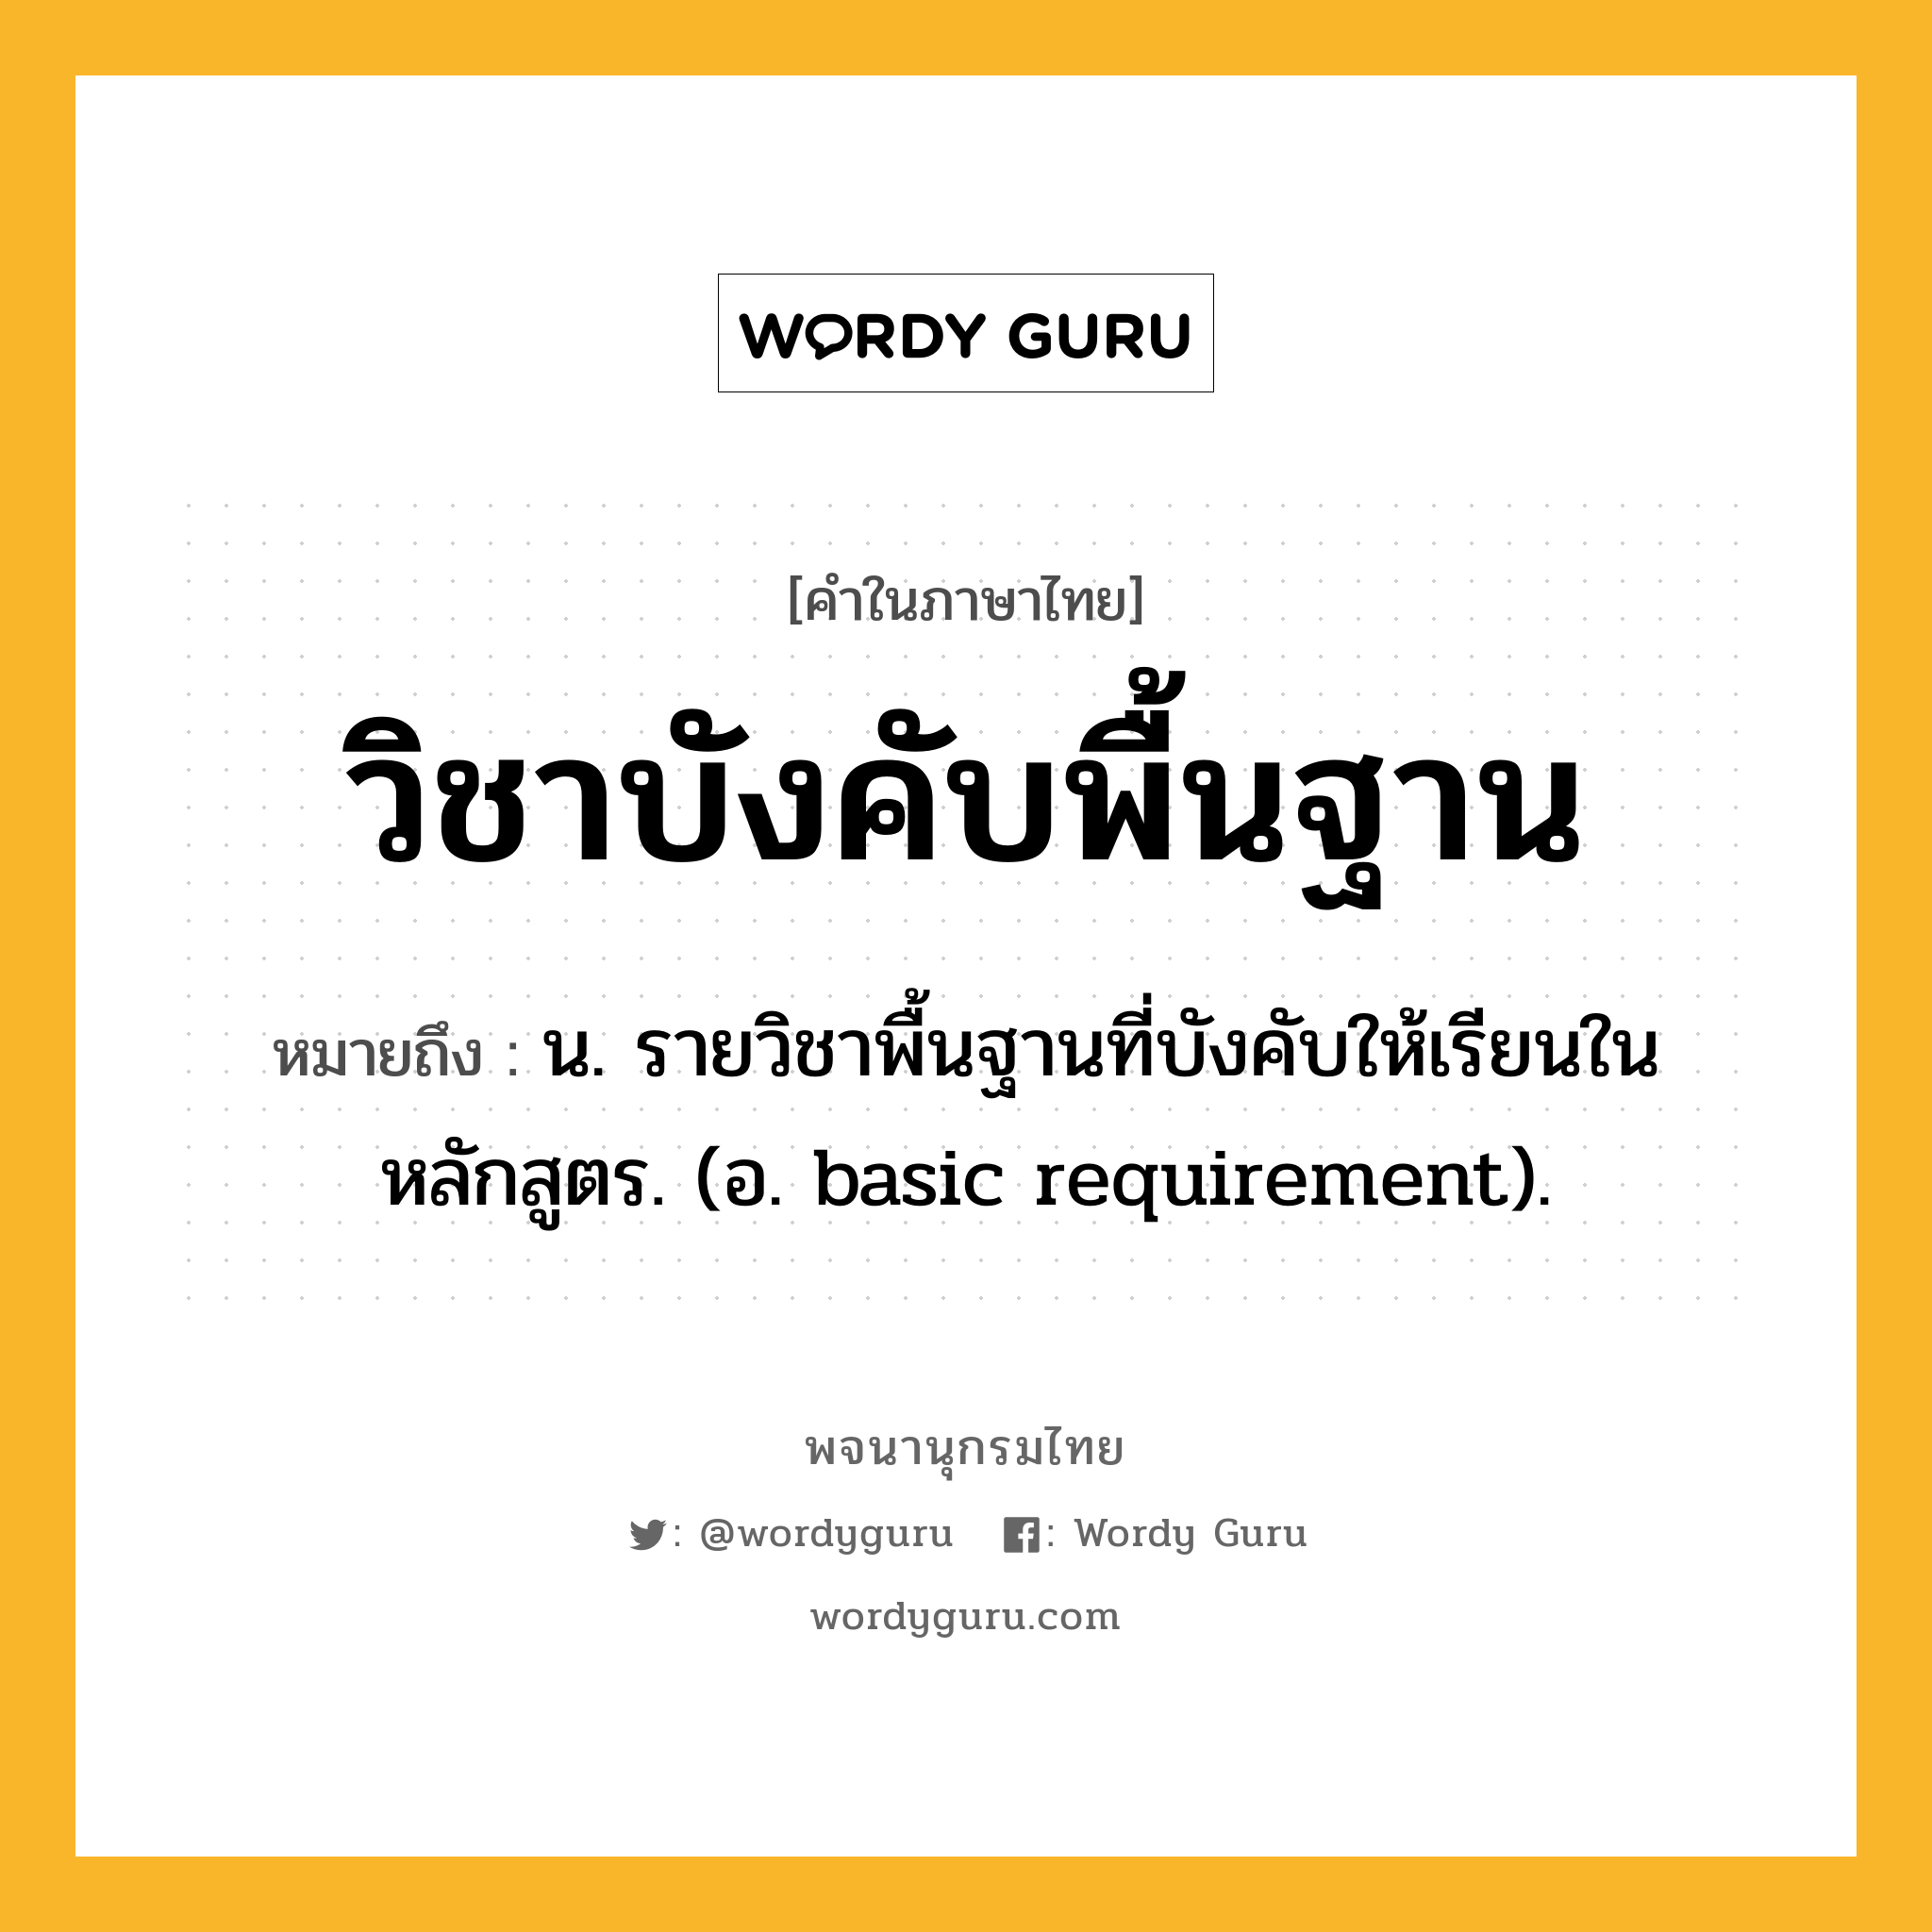 วิชาบังคับพื้นฐาน ความหมาย หมายถึงอะไร?, คำในภาษาไทย วิชาบังคับพื้นฐาน หมายถึง น. รายวิชาพื้นฐานที่บังคับให้เรียนในหลักสูตร. (อ. basic requirement).